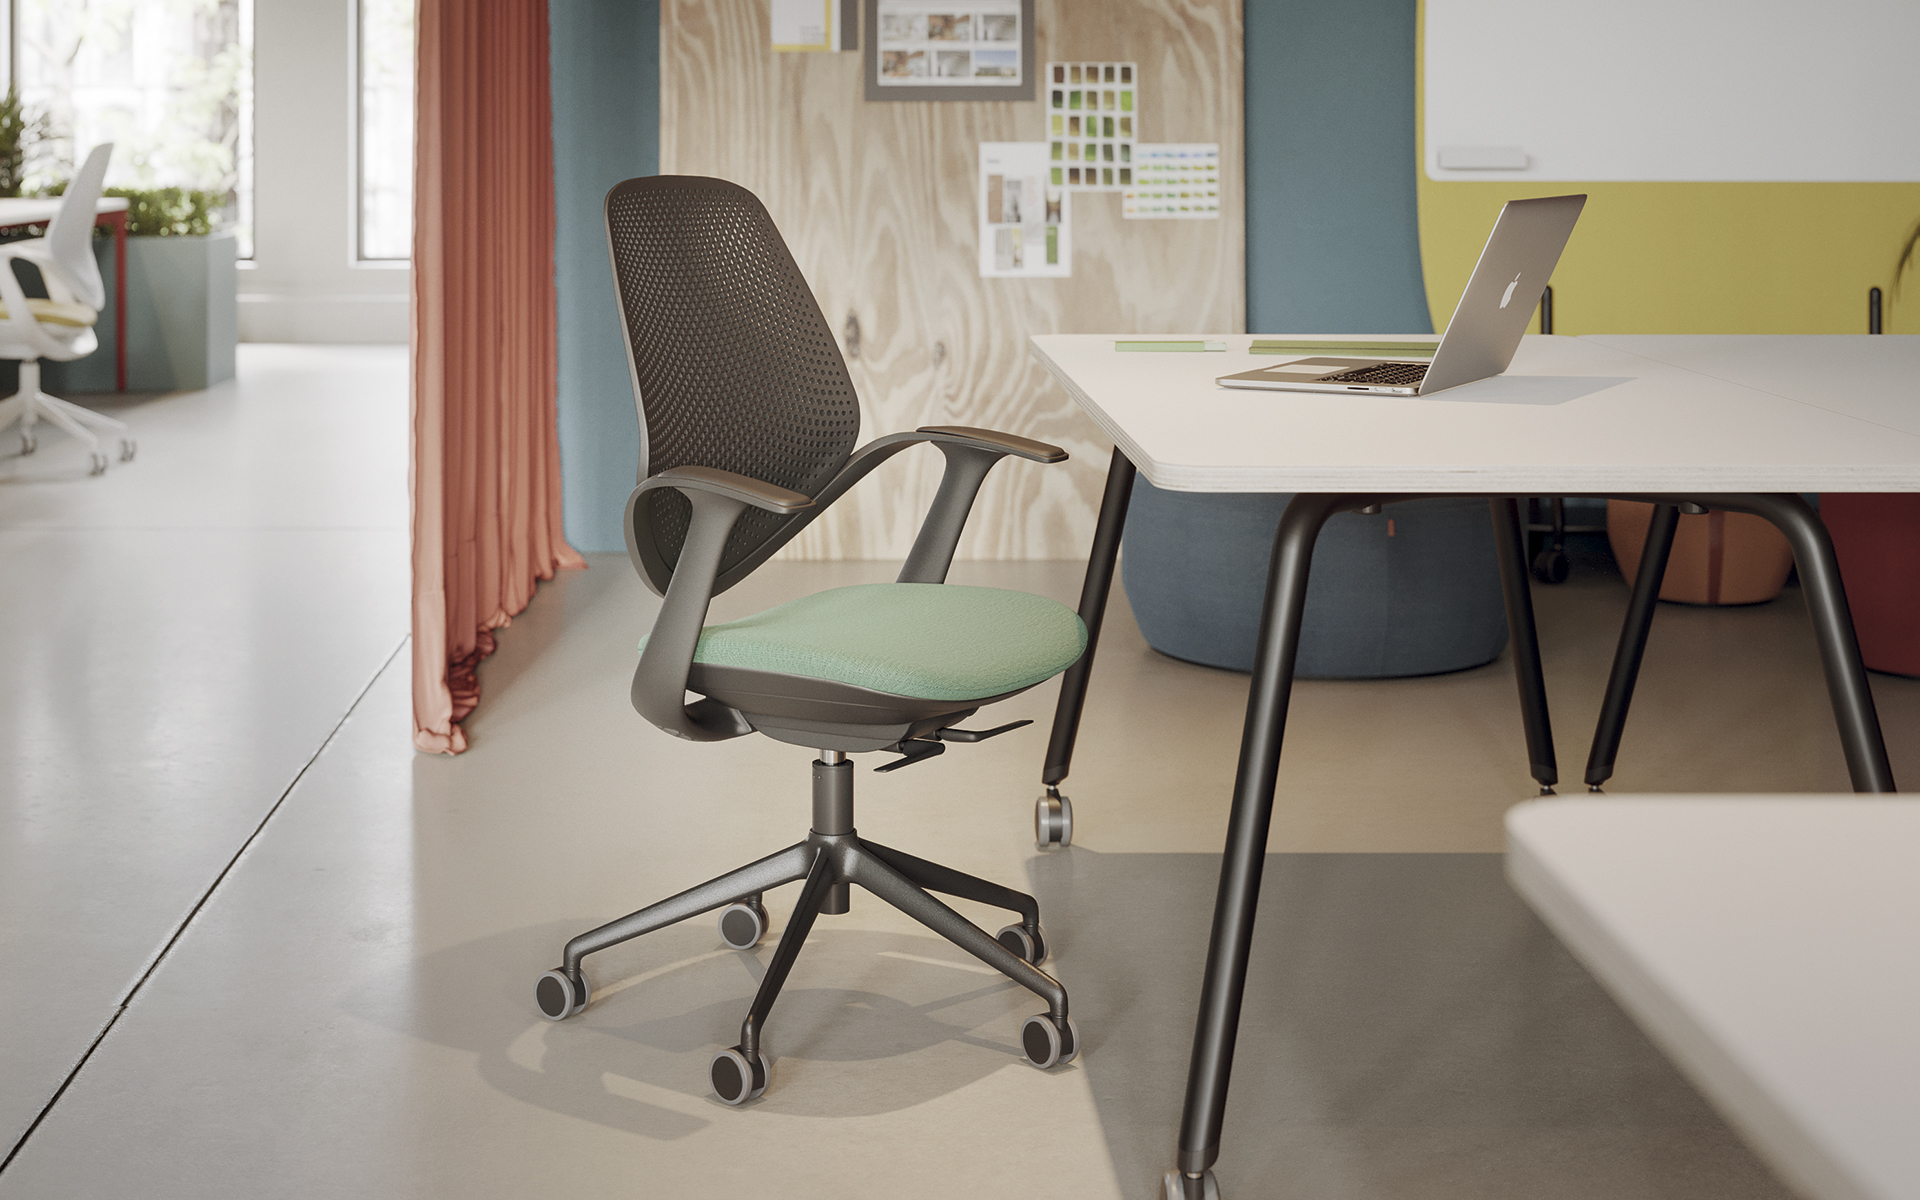 Forma 5 Flow Bürostuhl von ITO Design mit gepolsterter Sitzfläche in Mint, Rücken- und Armlehnen in Dunkelgrau vor einem Schreibtisch in einem hellen, offenen Büro.